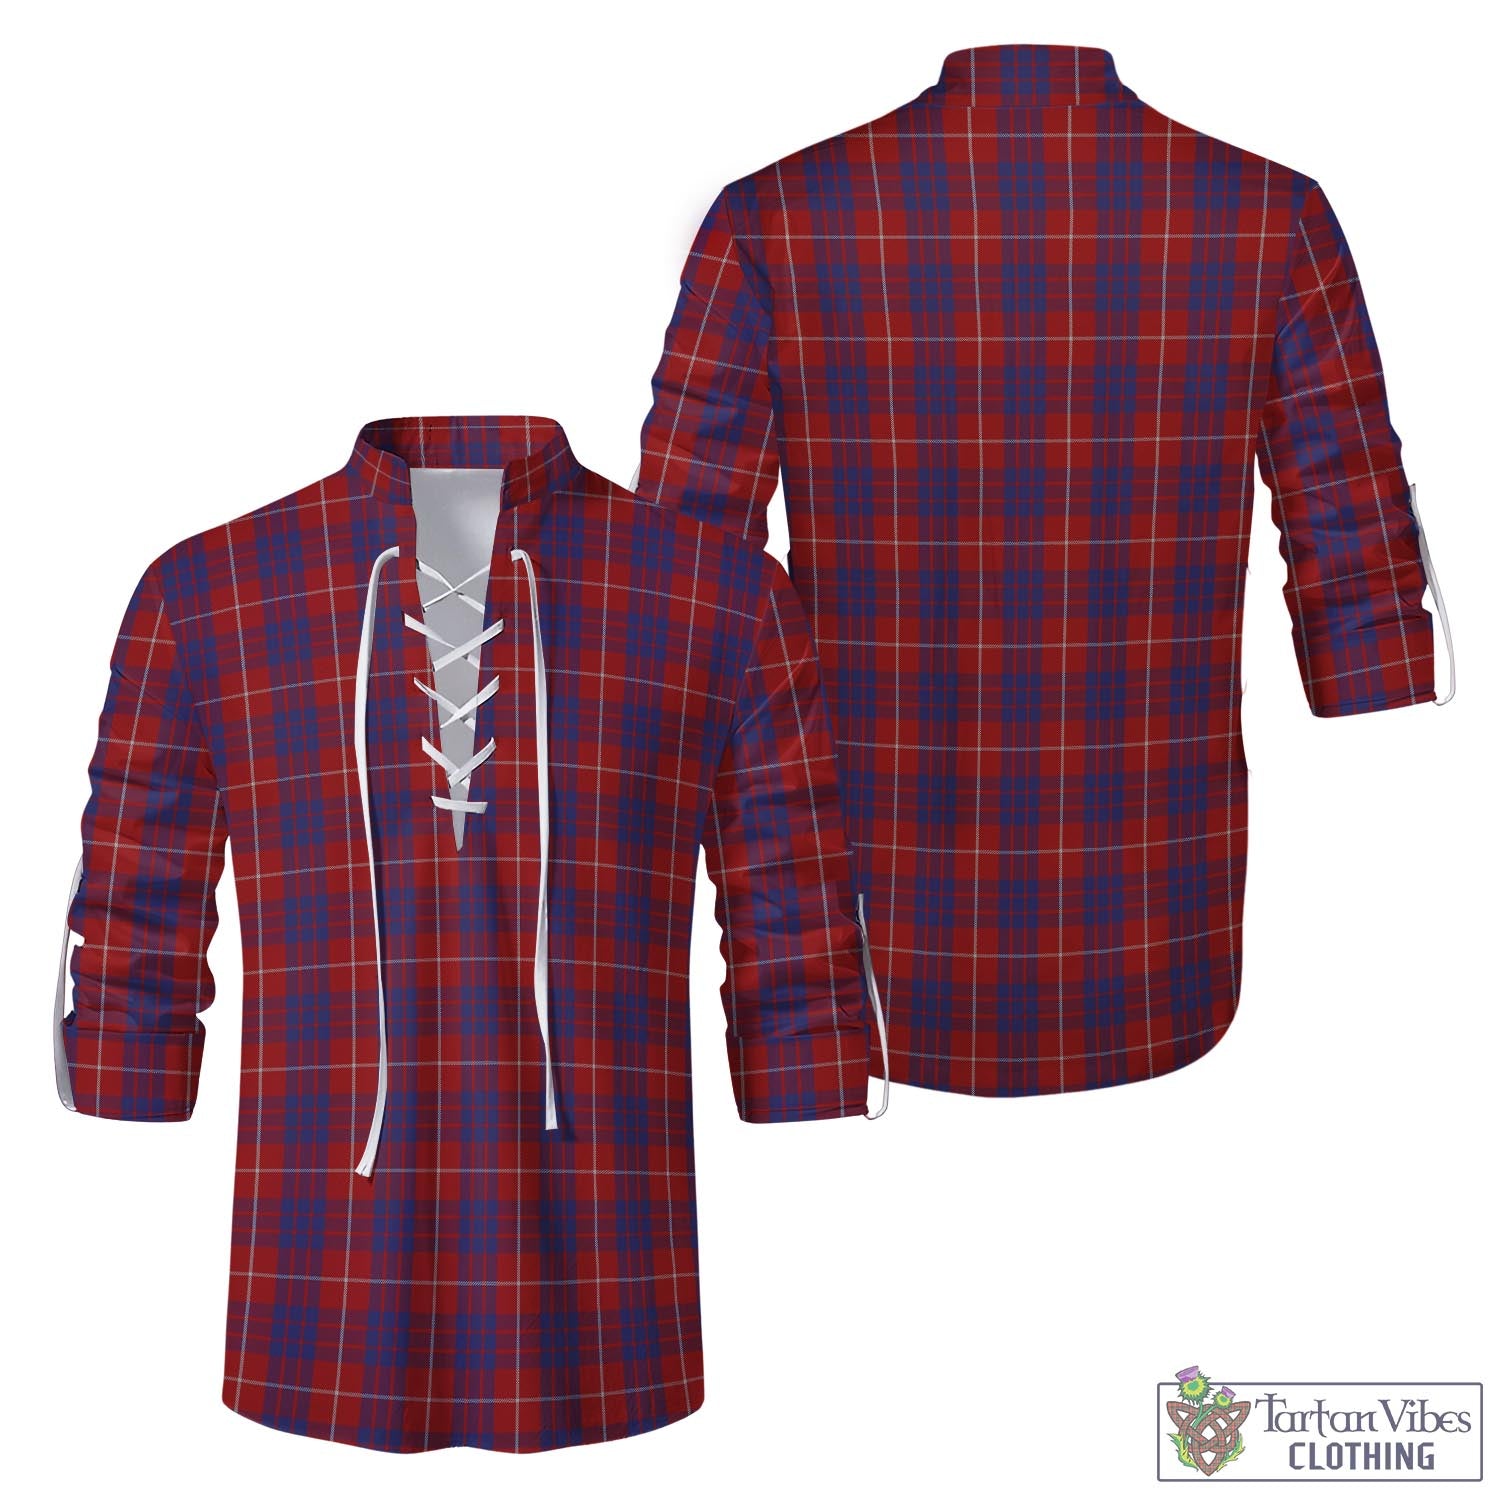 Tartan Vibes Clothing Hamilton Tartan Men's Scottish Traditional Jacobite Ghillie Kilt Shirt